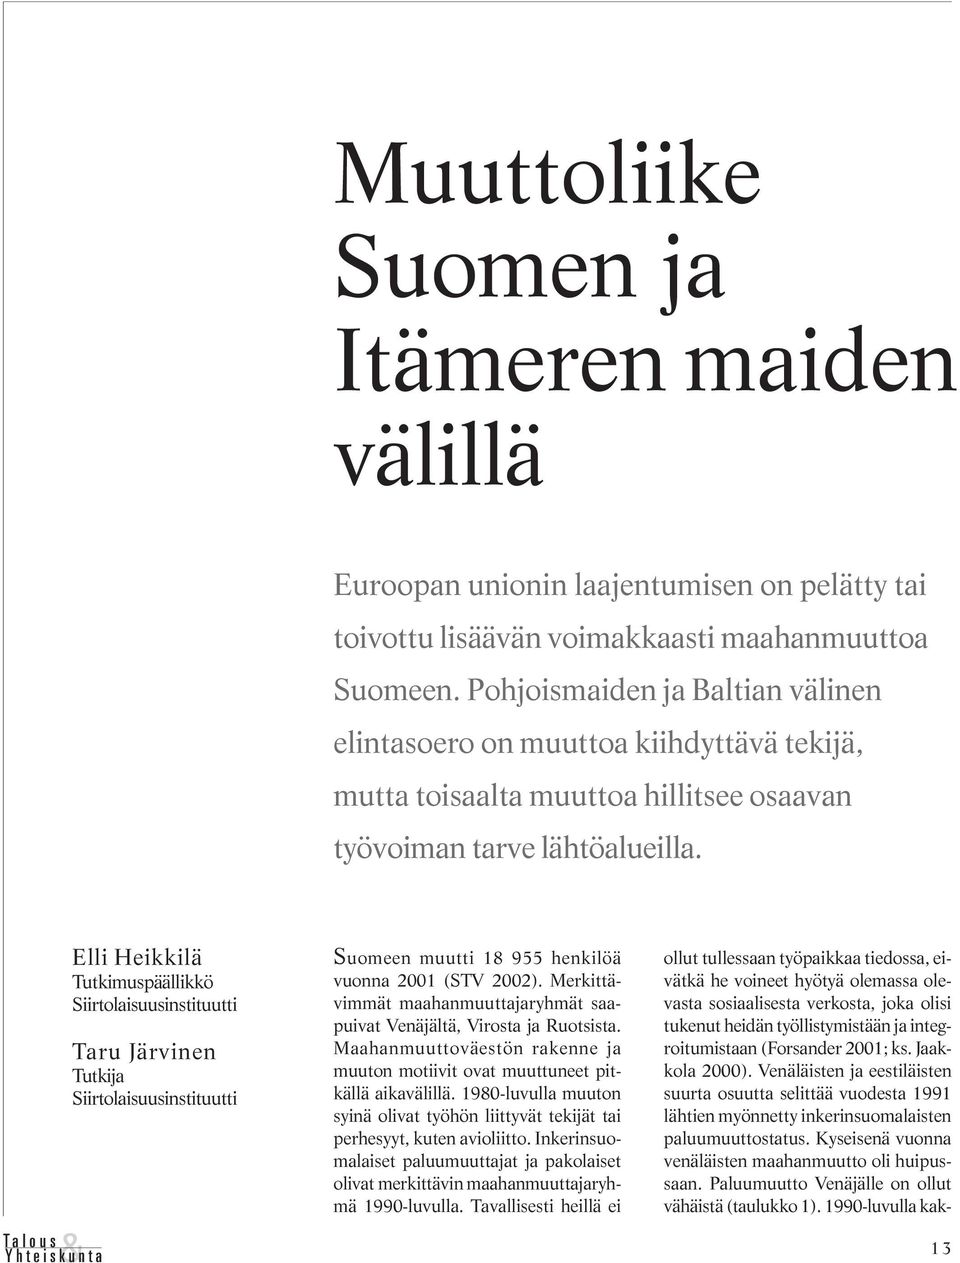 Elli Heikkilä Tutkimuspäällikkö Siirtolaisuusinstituutti Taru Järvinen Tutkija Siirtolaisuusinstituutti Suomeen muutti 18 955 henkilöä vuonna 2001 (STV 2002).